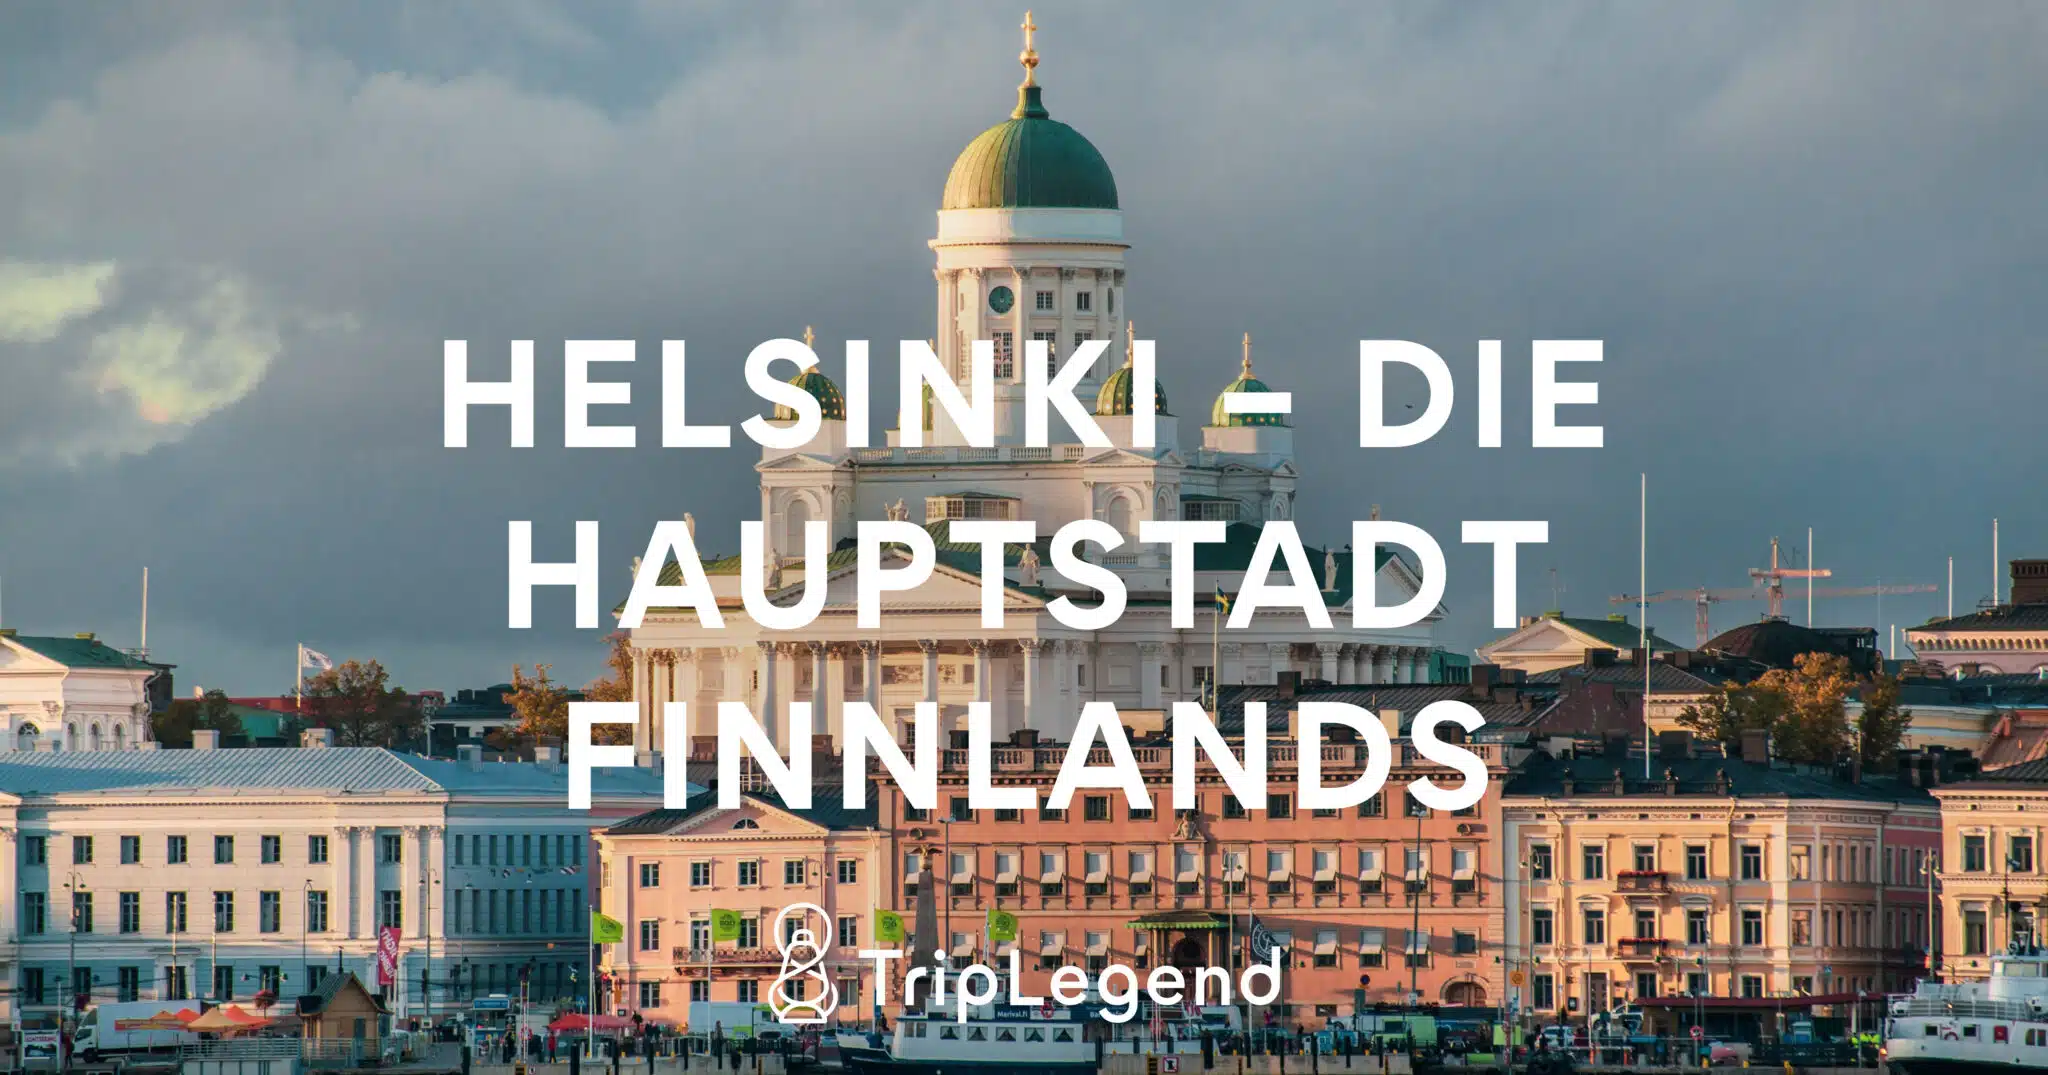 Helsinki – Die Hauptstadt Finnlands1 Scaled.jpg